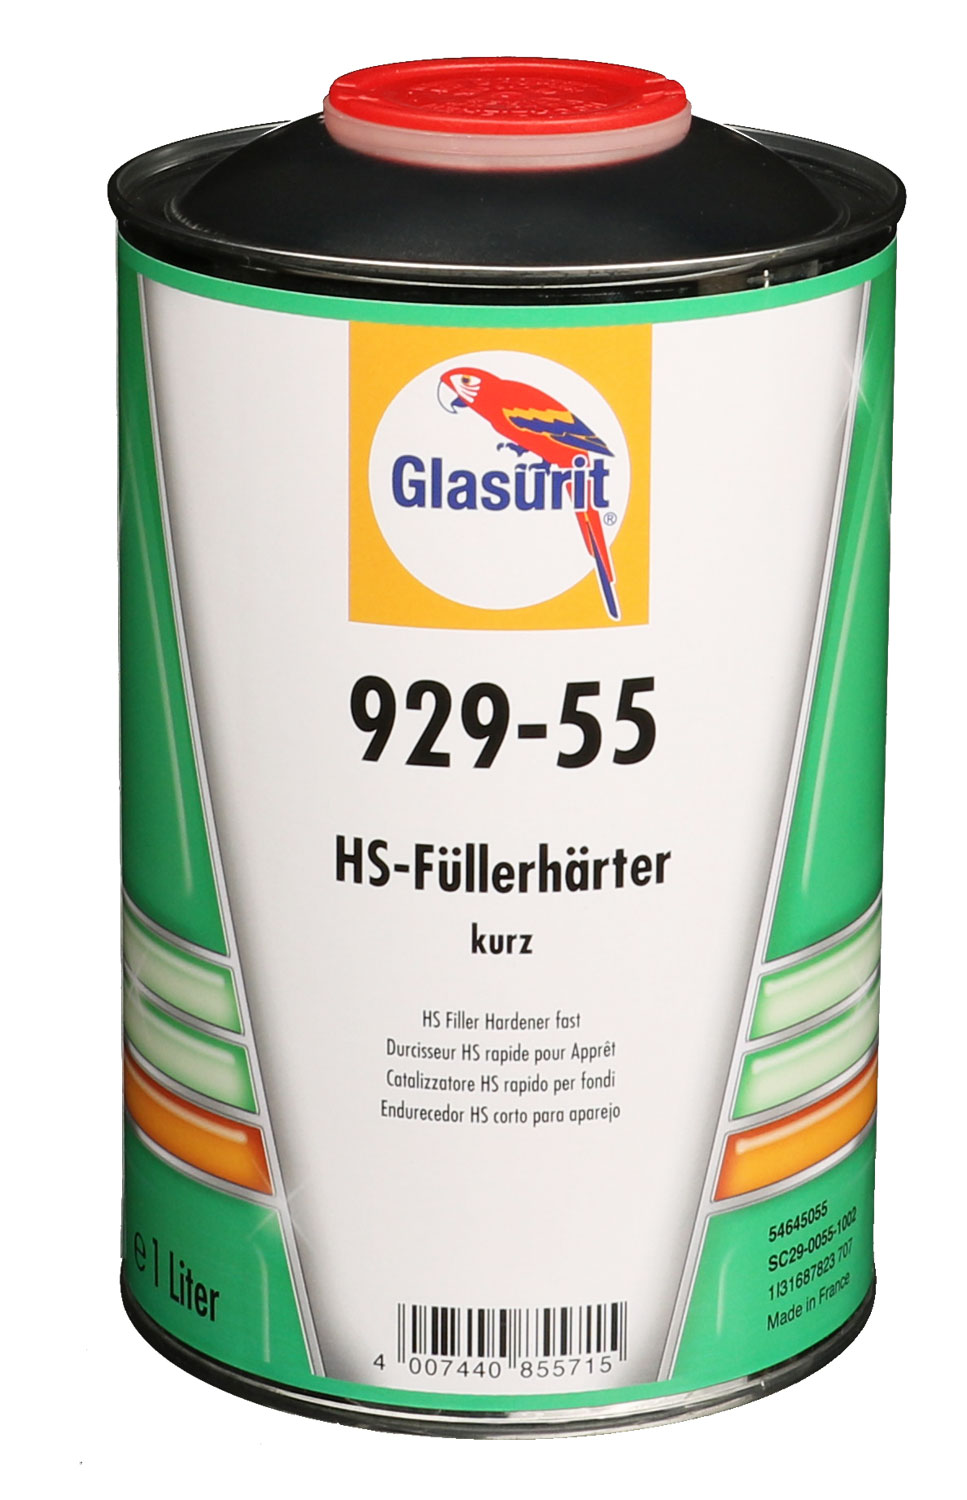 Glasurit HS-Füllerhärter kurz 929-55